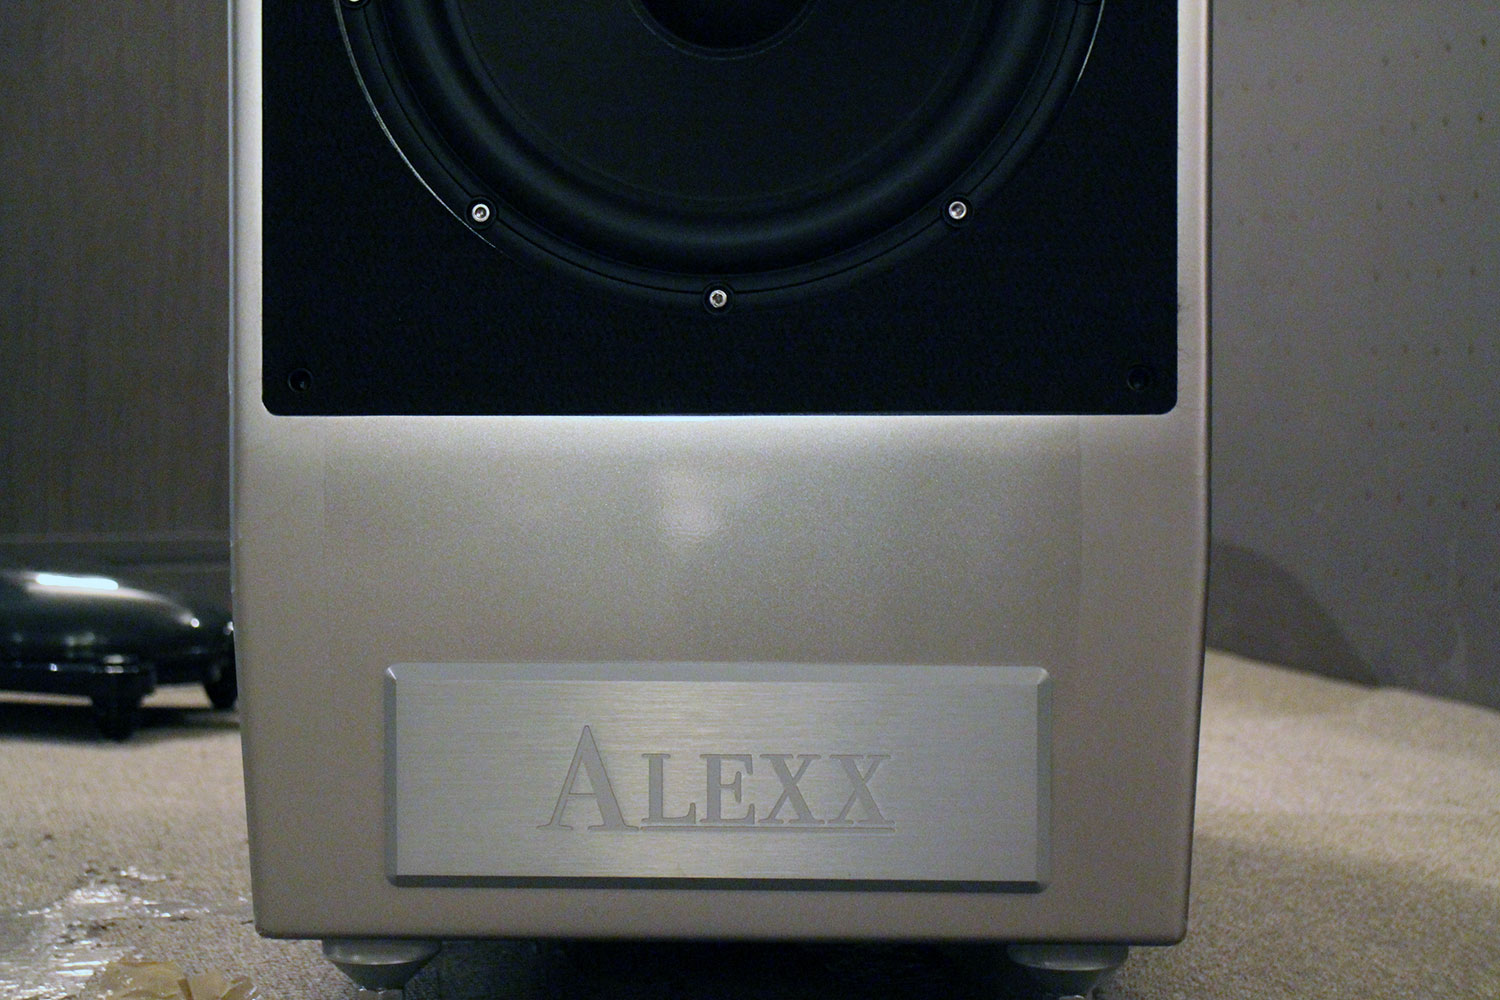 Wilson Audio Alexx speaker